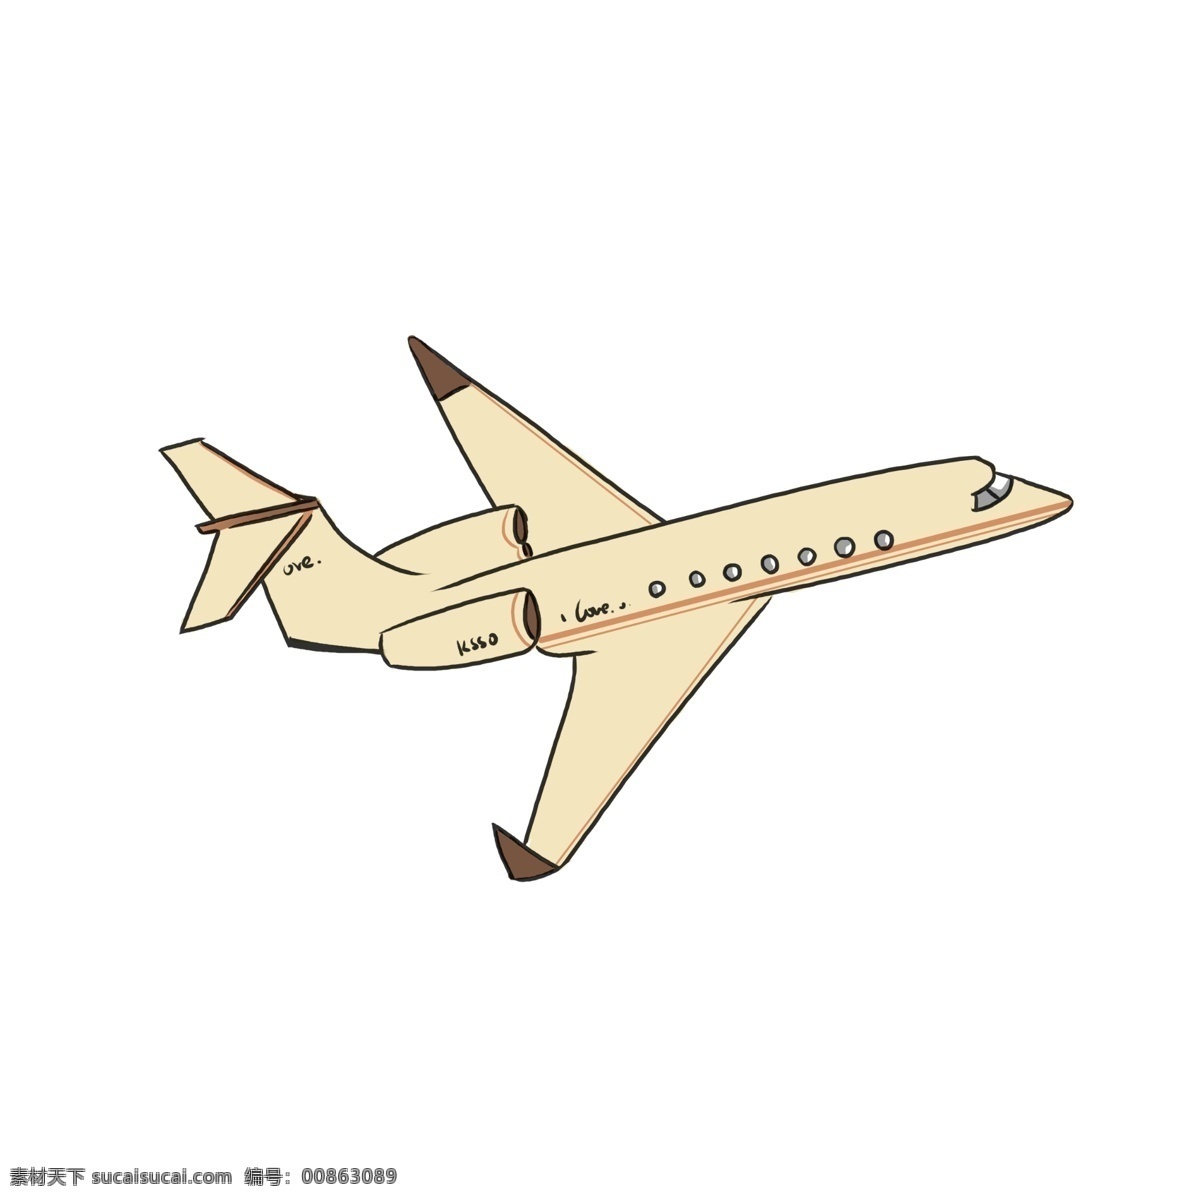 黄色 飞机 手绘 插画 黄色的飞机 飞着的飞机 漂亮的飞机 航空飞机 航天飞机 飞机装饰 飞机插画